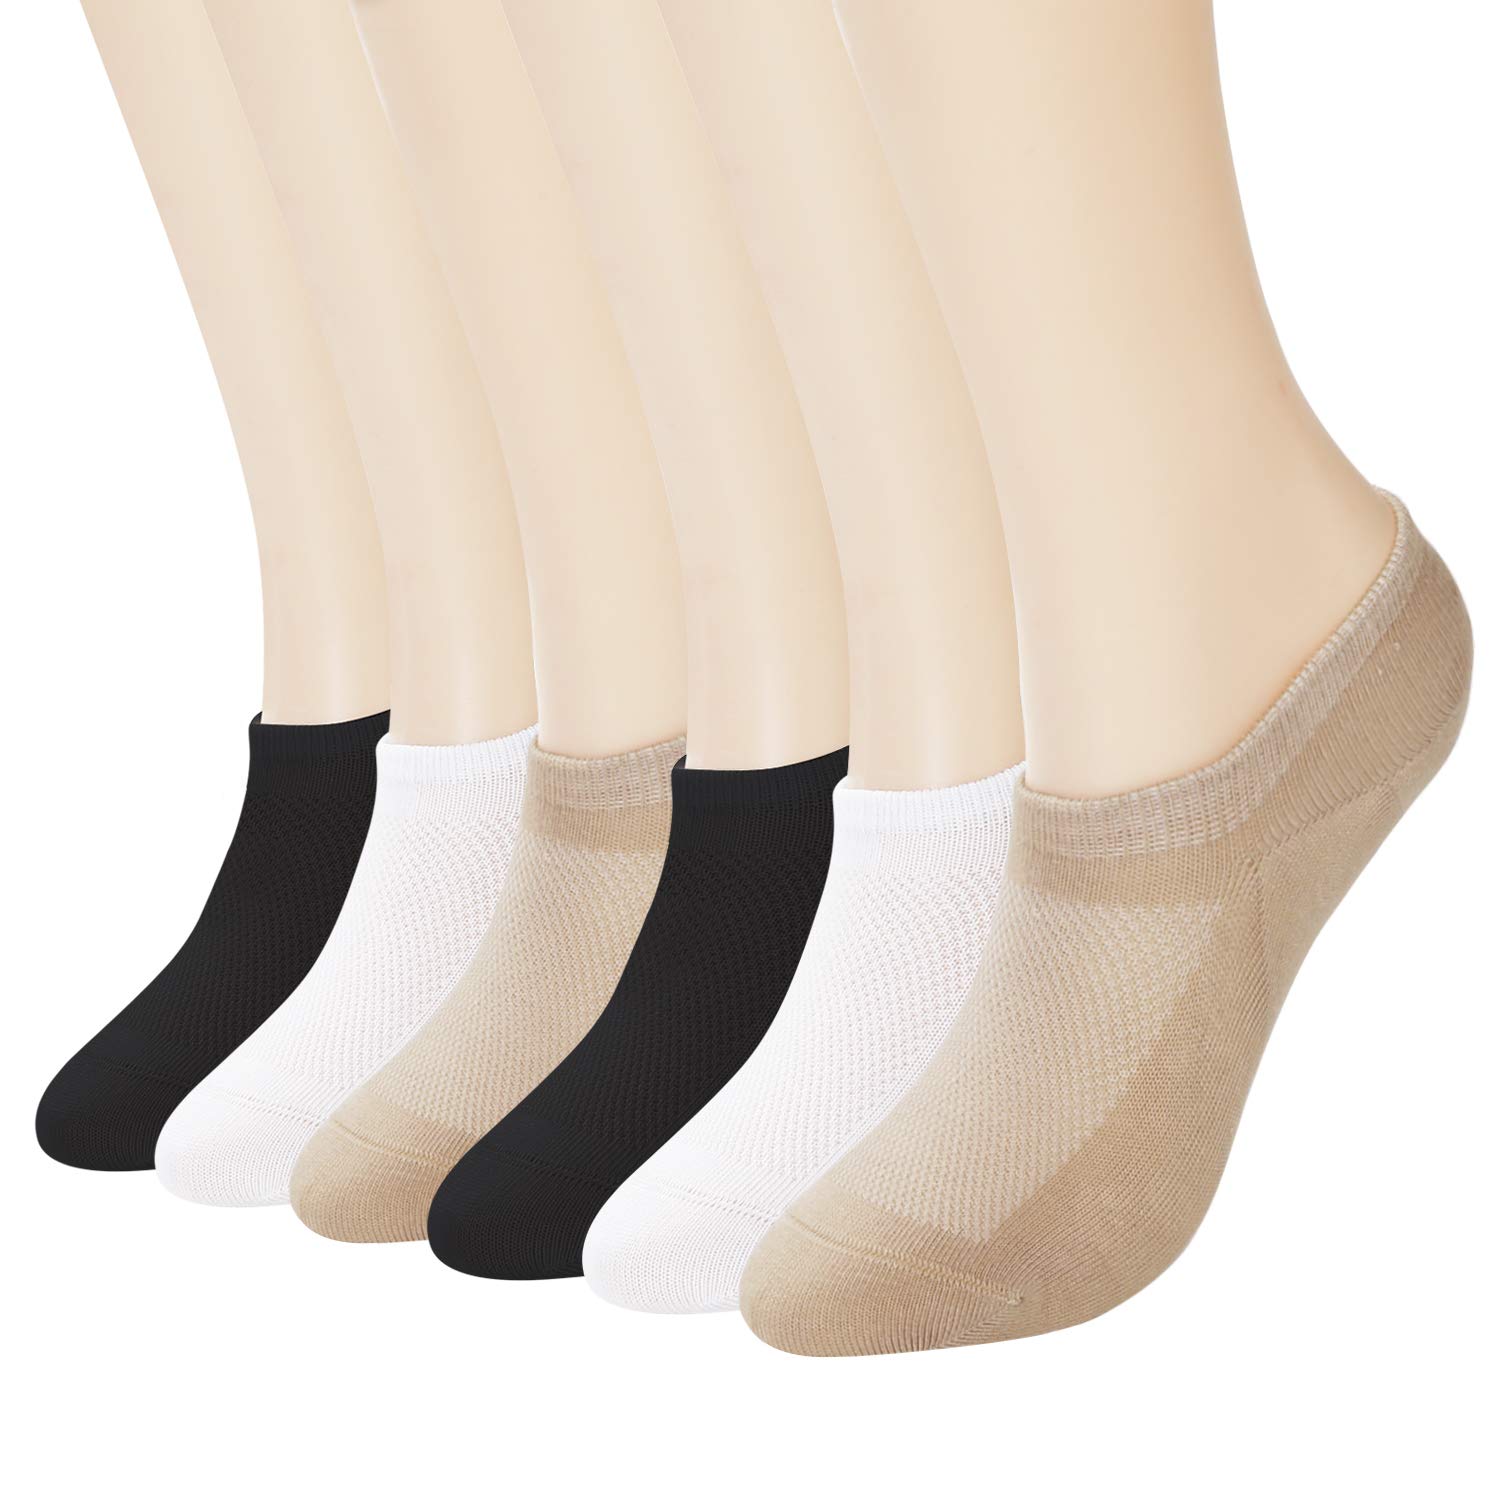 +MD 6 Paar Viskose Sneaker Socken Atmungsaktiv Damen Unsichtbar Kurzsocken für Loafers Boots Schuhe 2Schwarz2Weiß2Nude 39-42EU